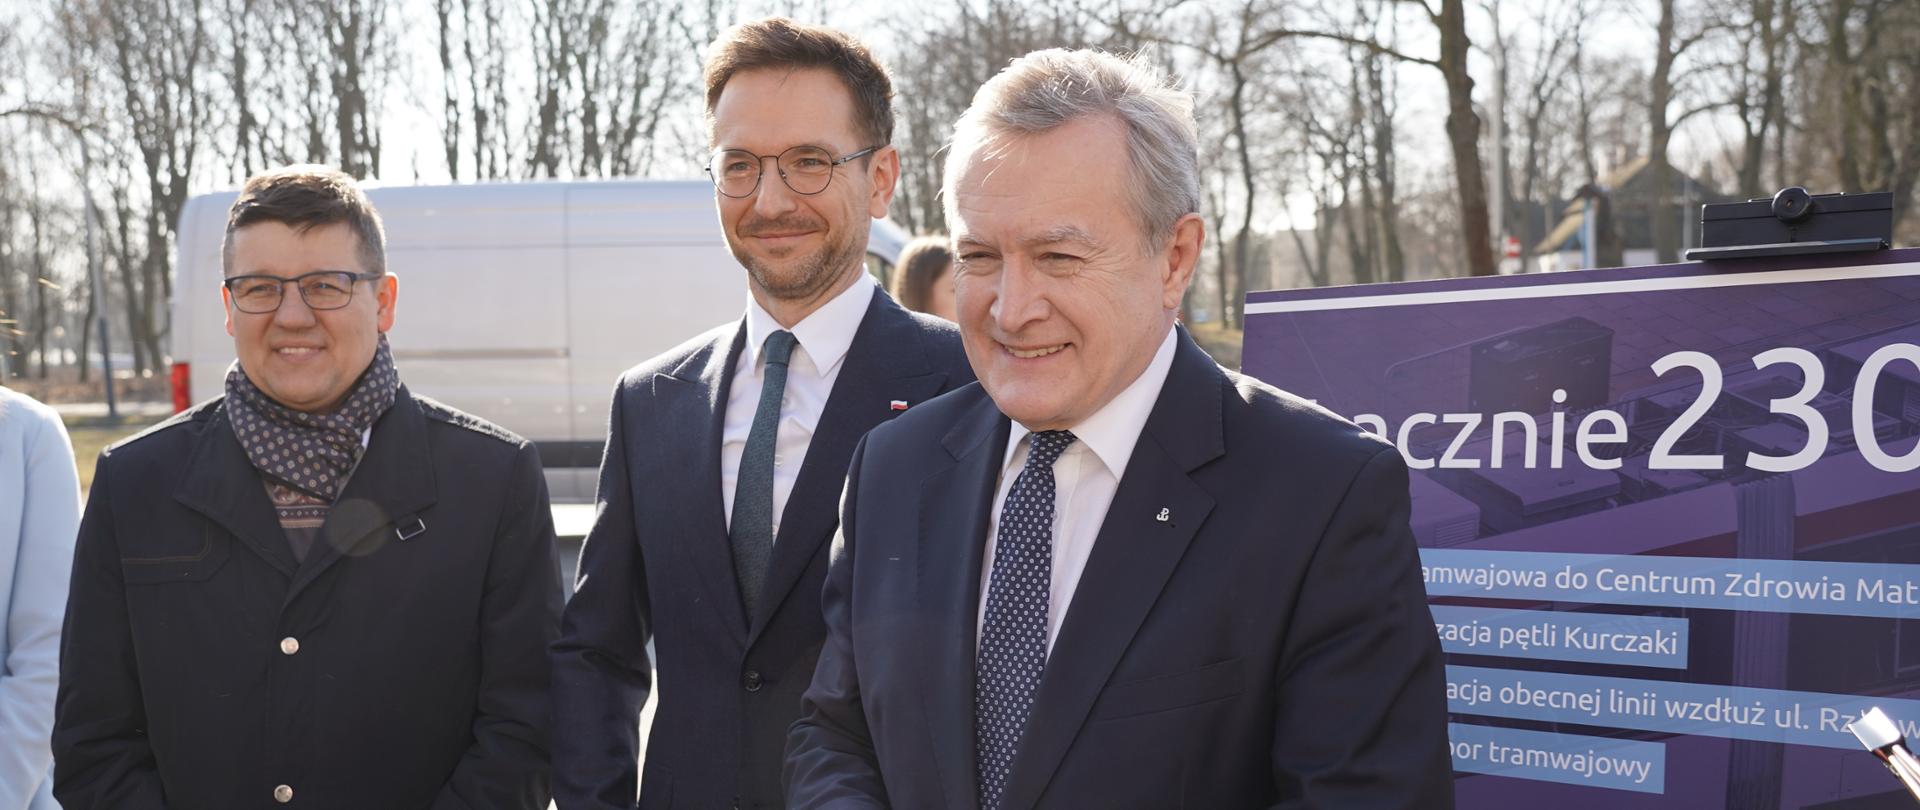 W plenerze stoją od prawej premier Piotr Gliński, minister Waldemar Buda i burmistrz Mateusz Kamiński